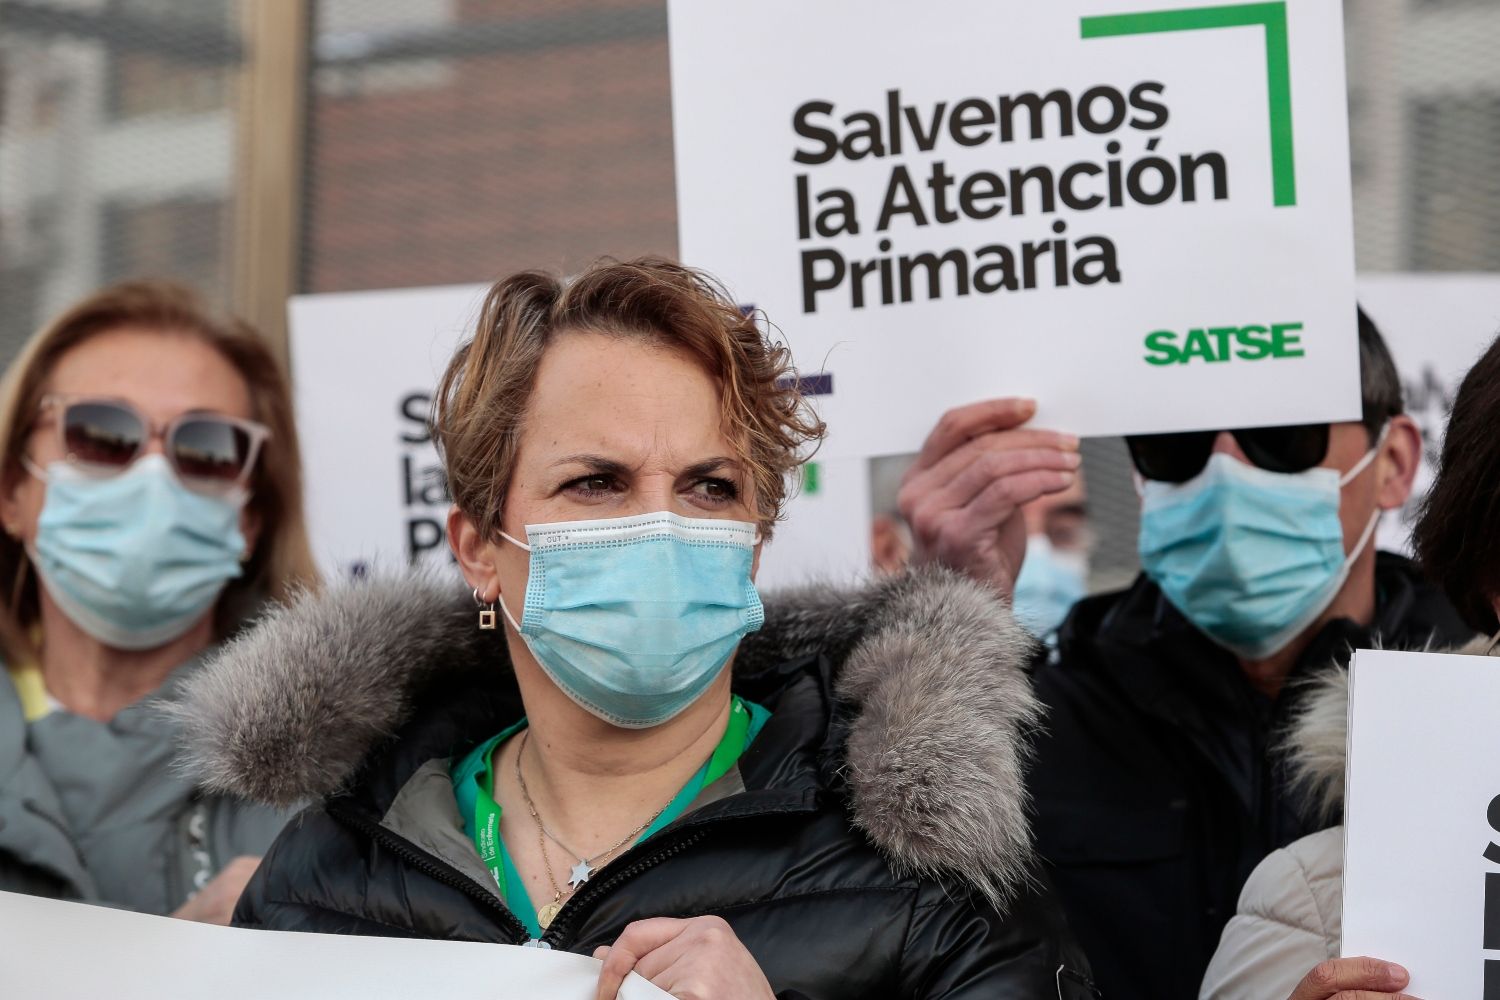  Satse León denuncia ante la Inspección de Trabajo que la Gerencia de Atención Primaria no provee a los enfermos de EPIS